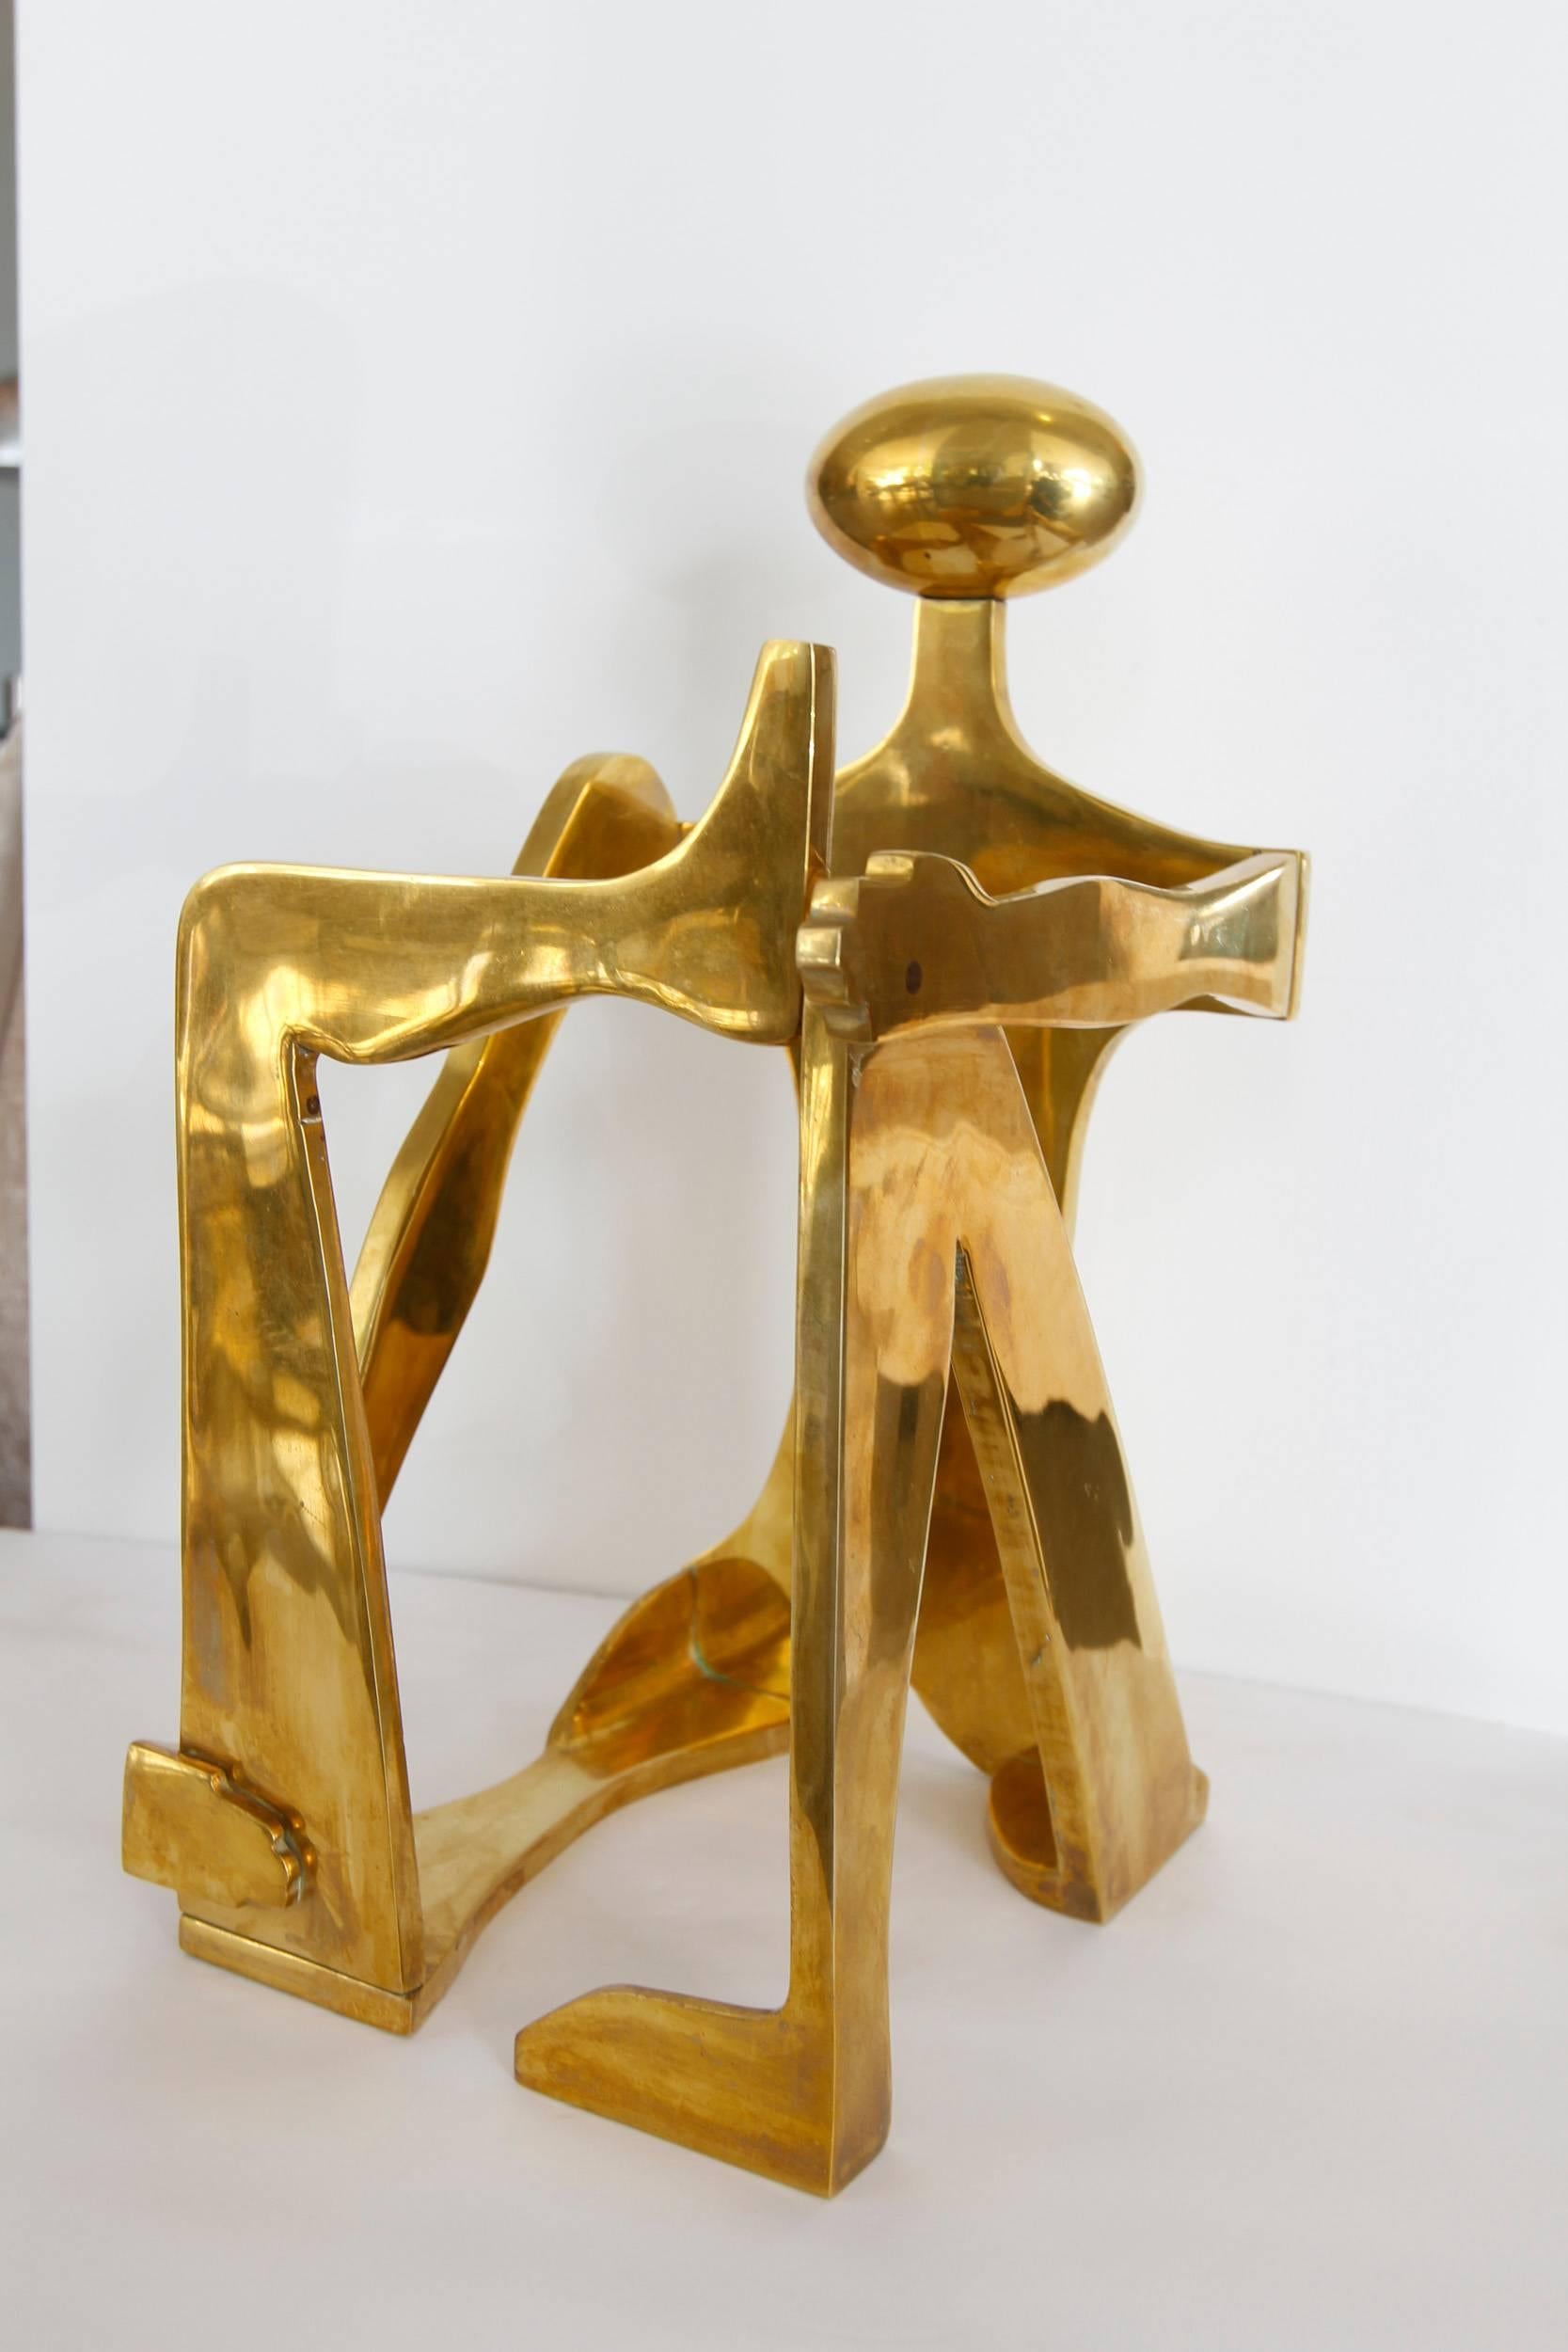 Modernist Brass Figural Sculpture by Arleen Eichengreen & Nancy Gensburg 1